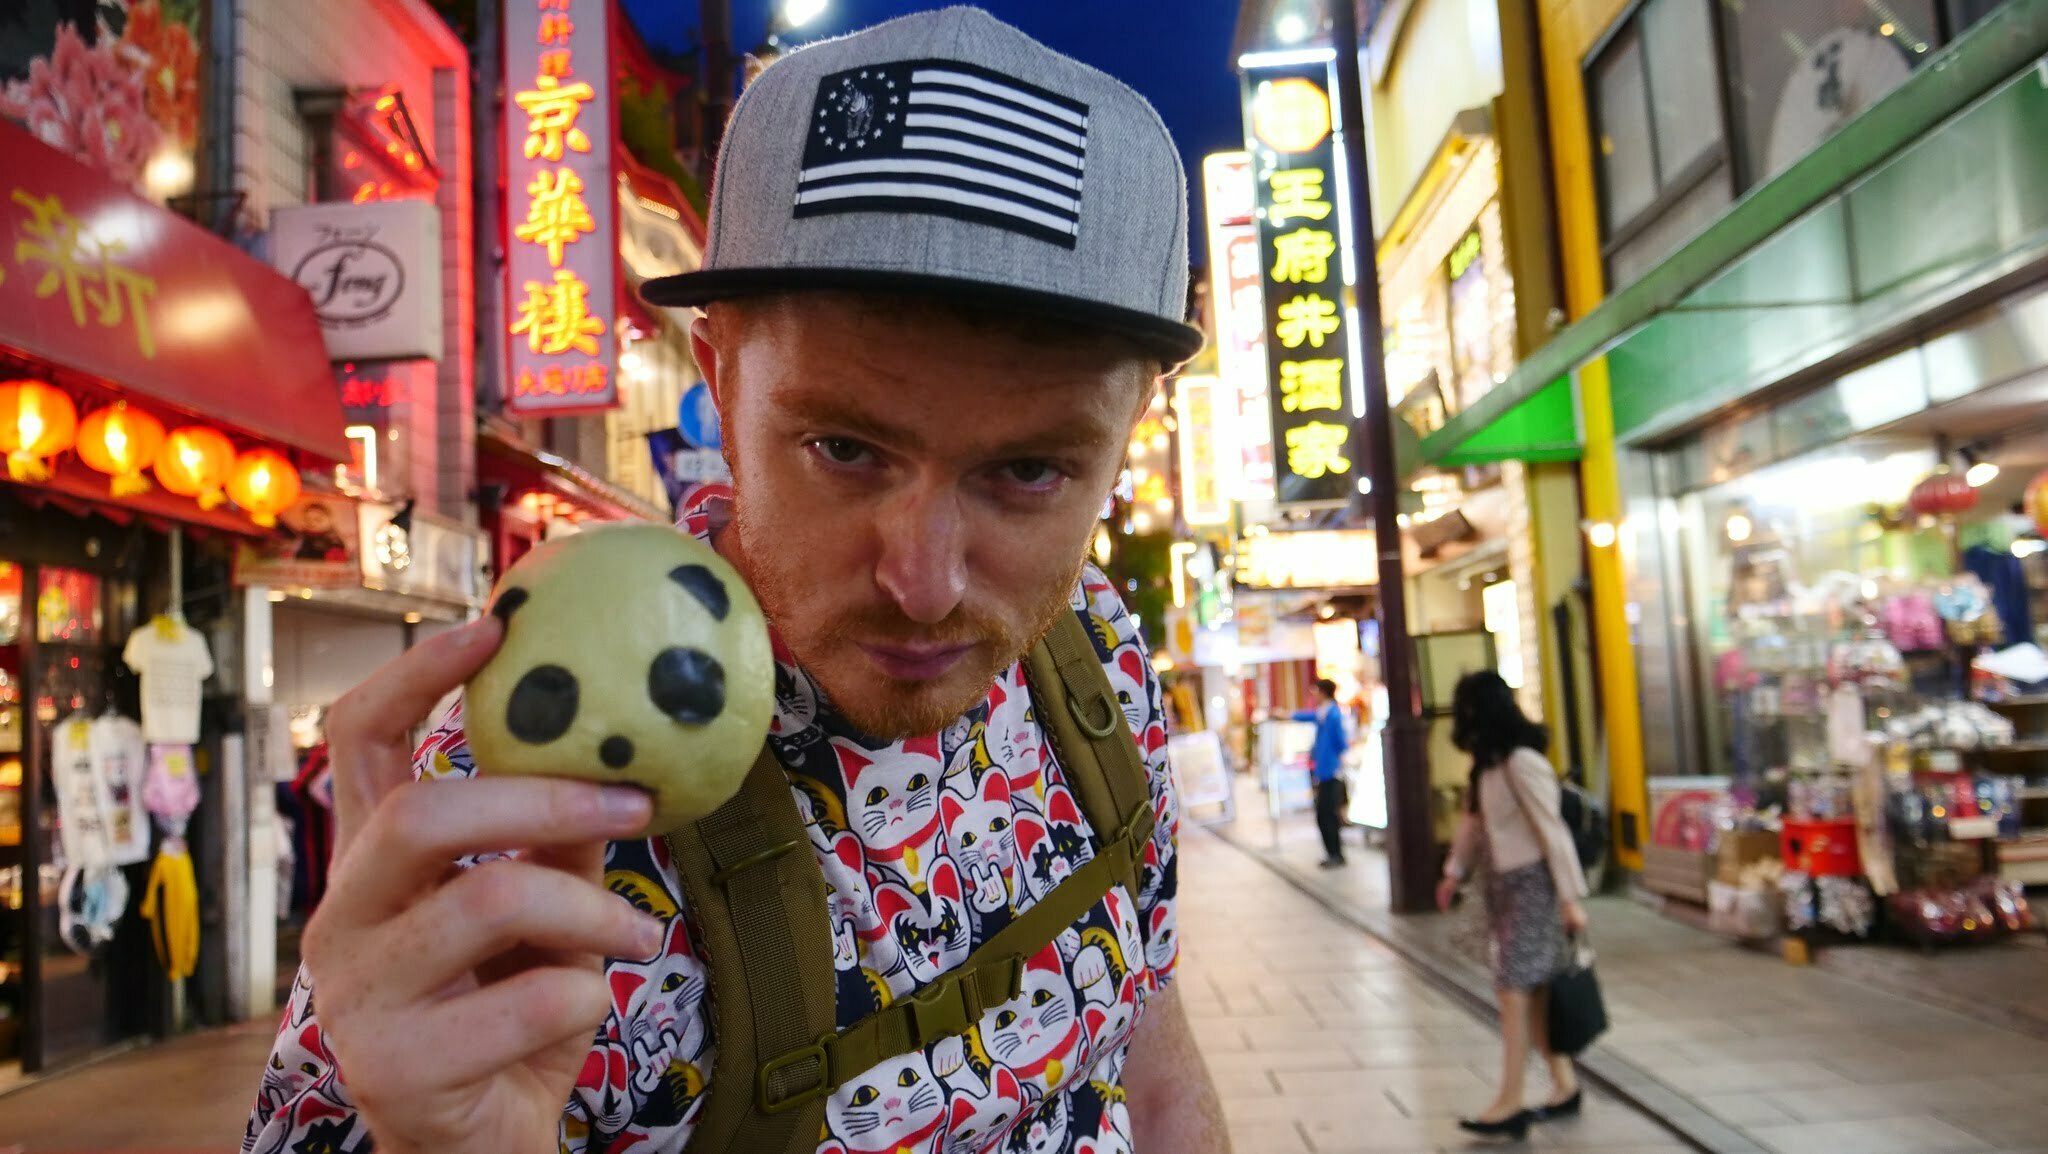 Nomadic Samuel in Tokyo, Japan eating Street Food at night